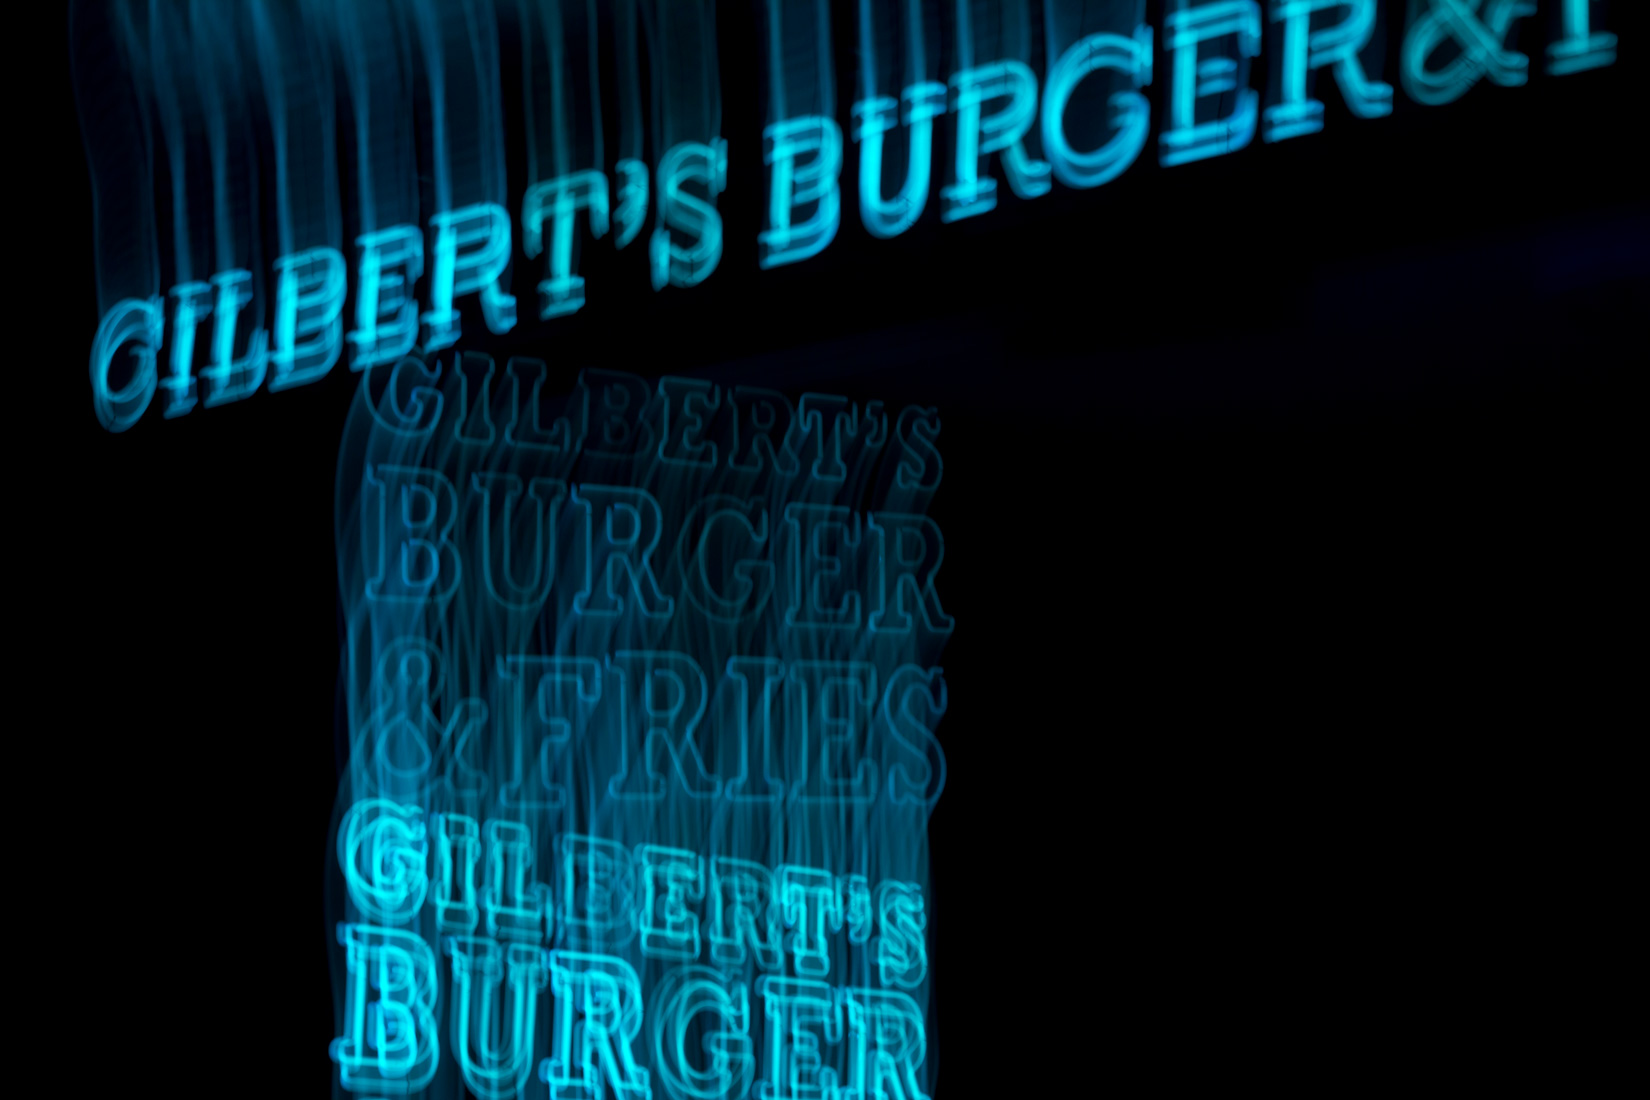 Light painting, mouvement, burger